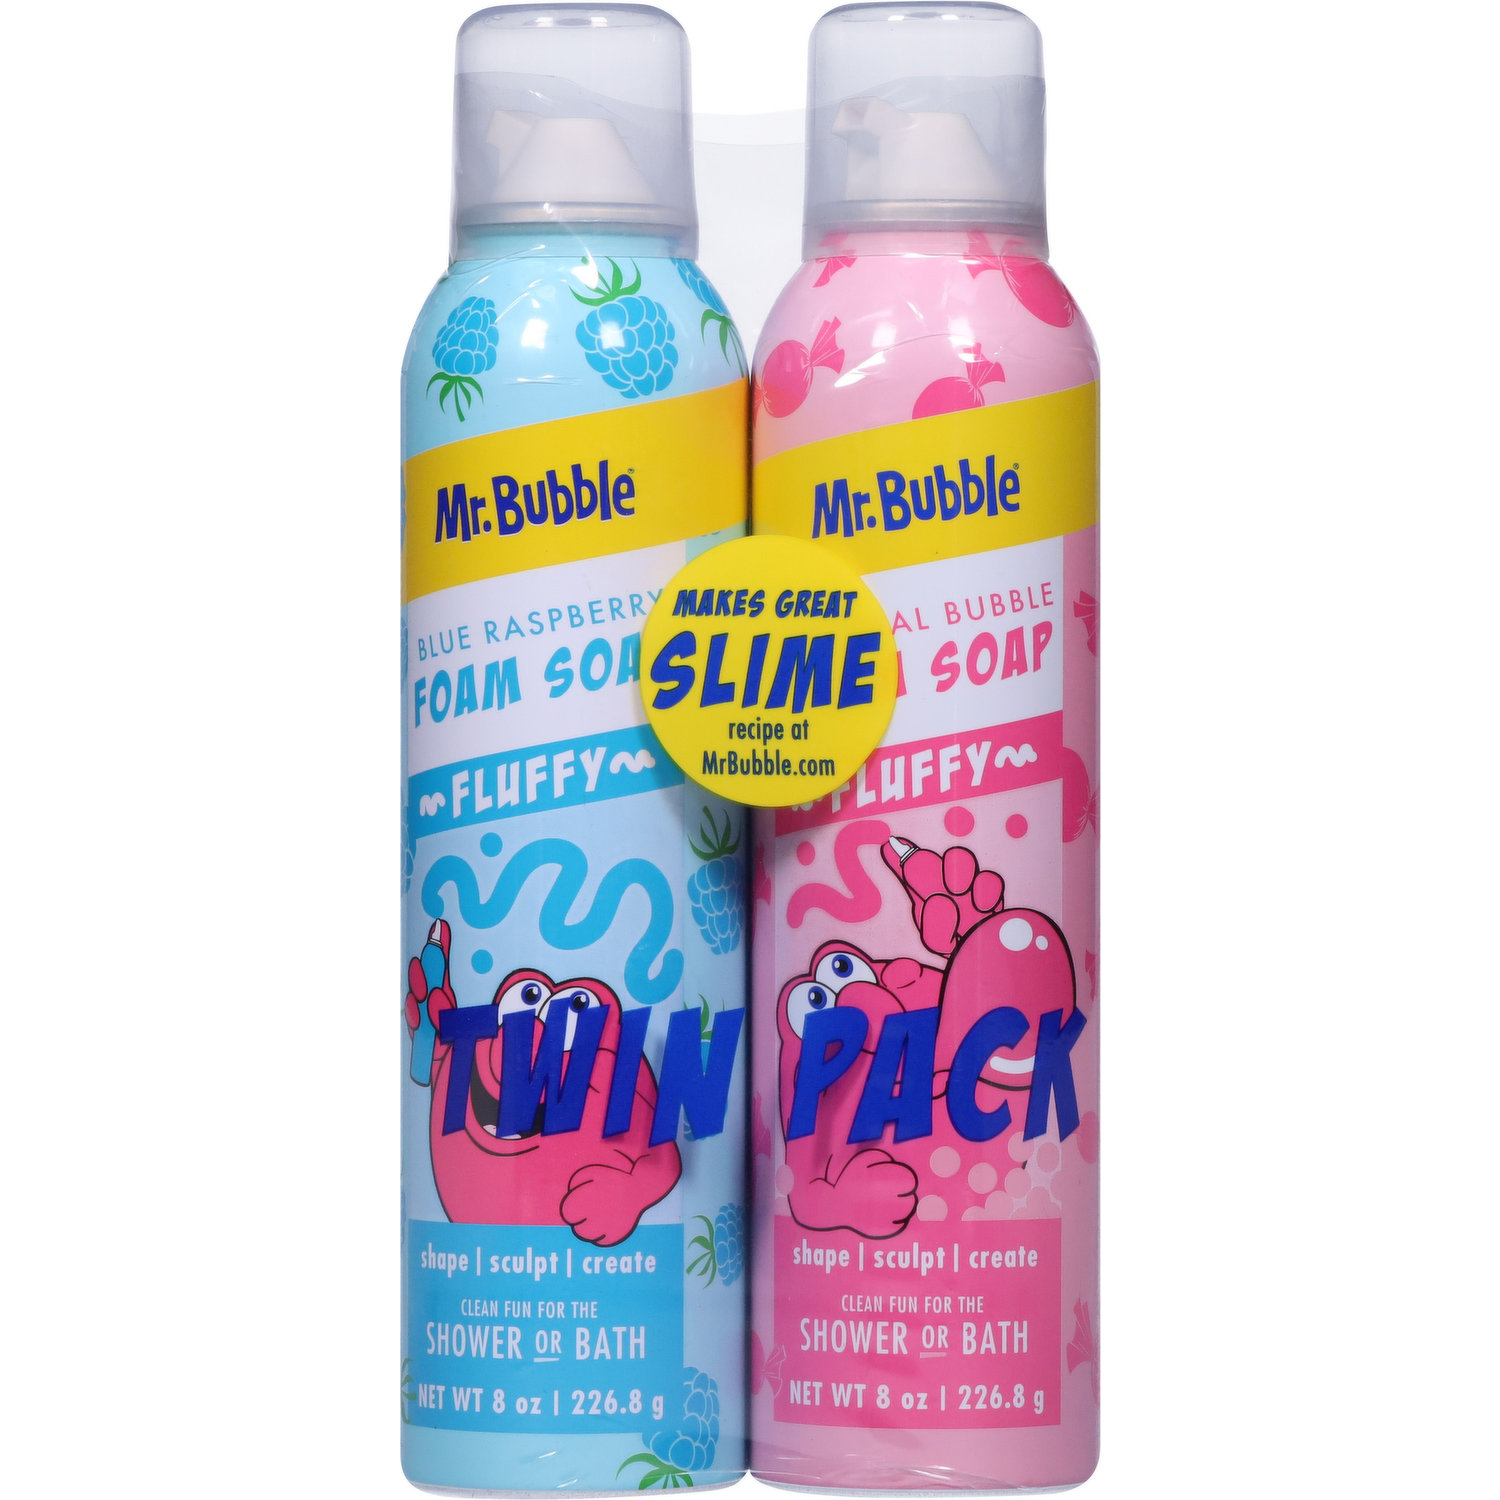 Mr. Bubble Foam Soap Twin Pack $2.49 - Family Wholesale